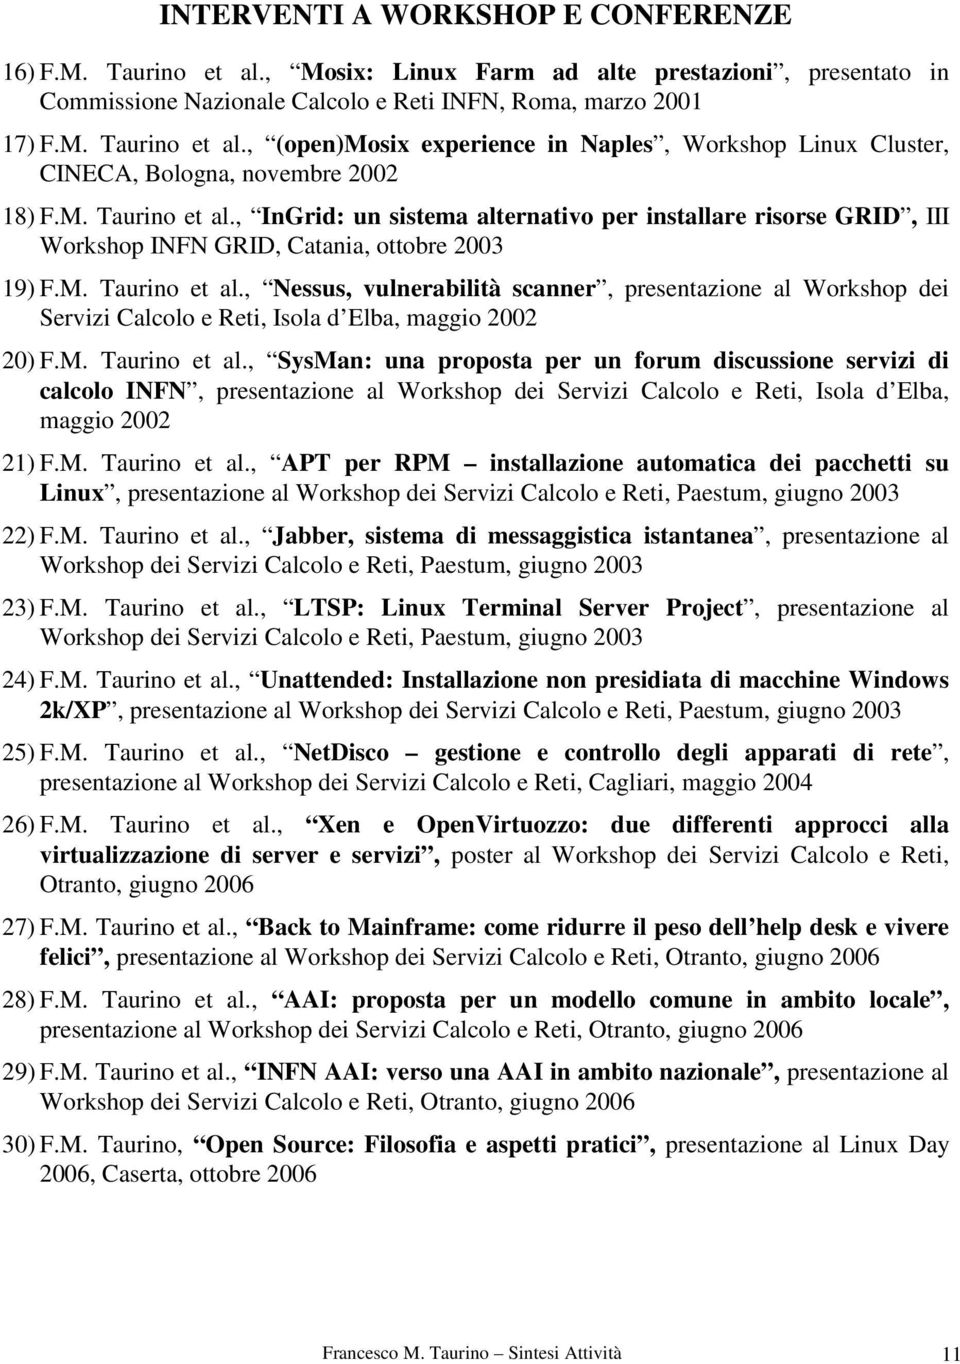 M. Taurino et al., SysMan: una proposta per un forum discussione servizi di calcolo INFN, presentazione al Workshop dei Servizi Calcolo e Reti, Isola d Elba, maggio 2002 21) F.M. Taurino et al., APT per RPM installazione automatica dei pacchetti su Linux, presentazione al Workshop dei Servizi Calcolo e Reti, Paestum, giugno 2003 22) F.